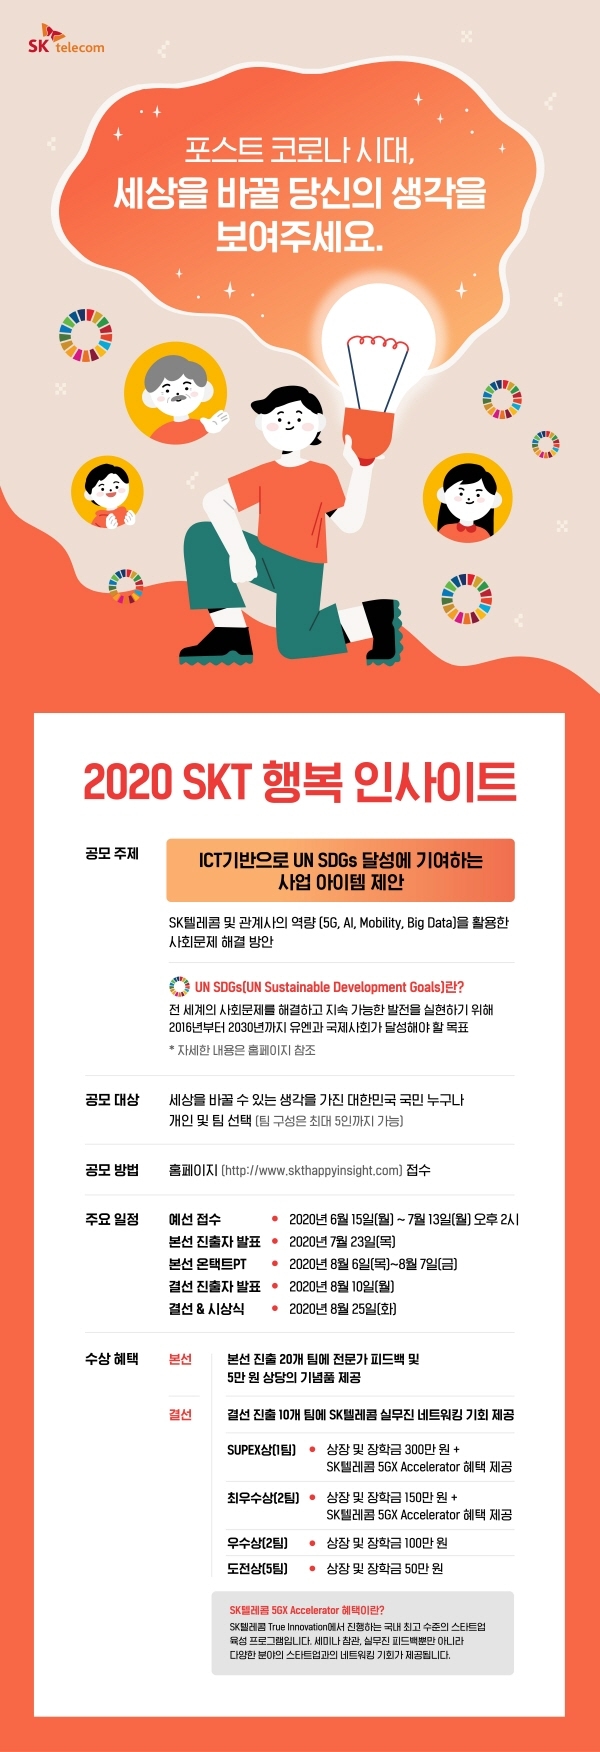 SK텔레콤이 2020 SKT 행복 인사이트를 개최한다